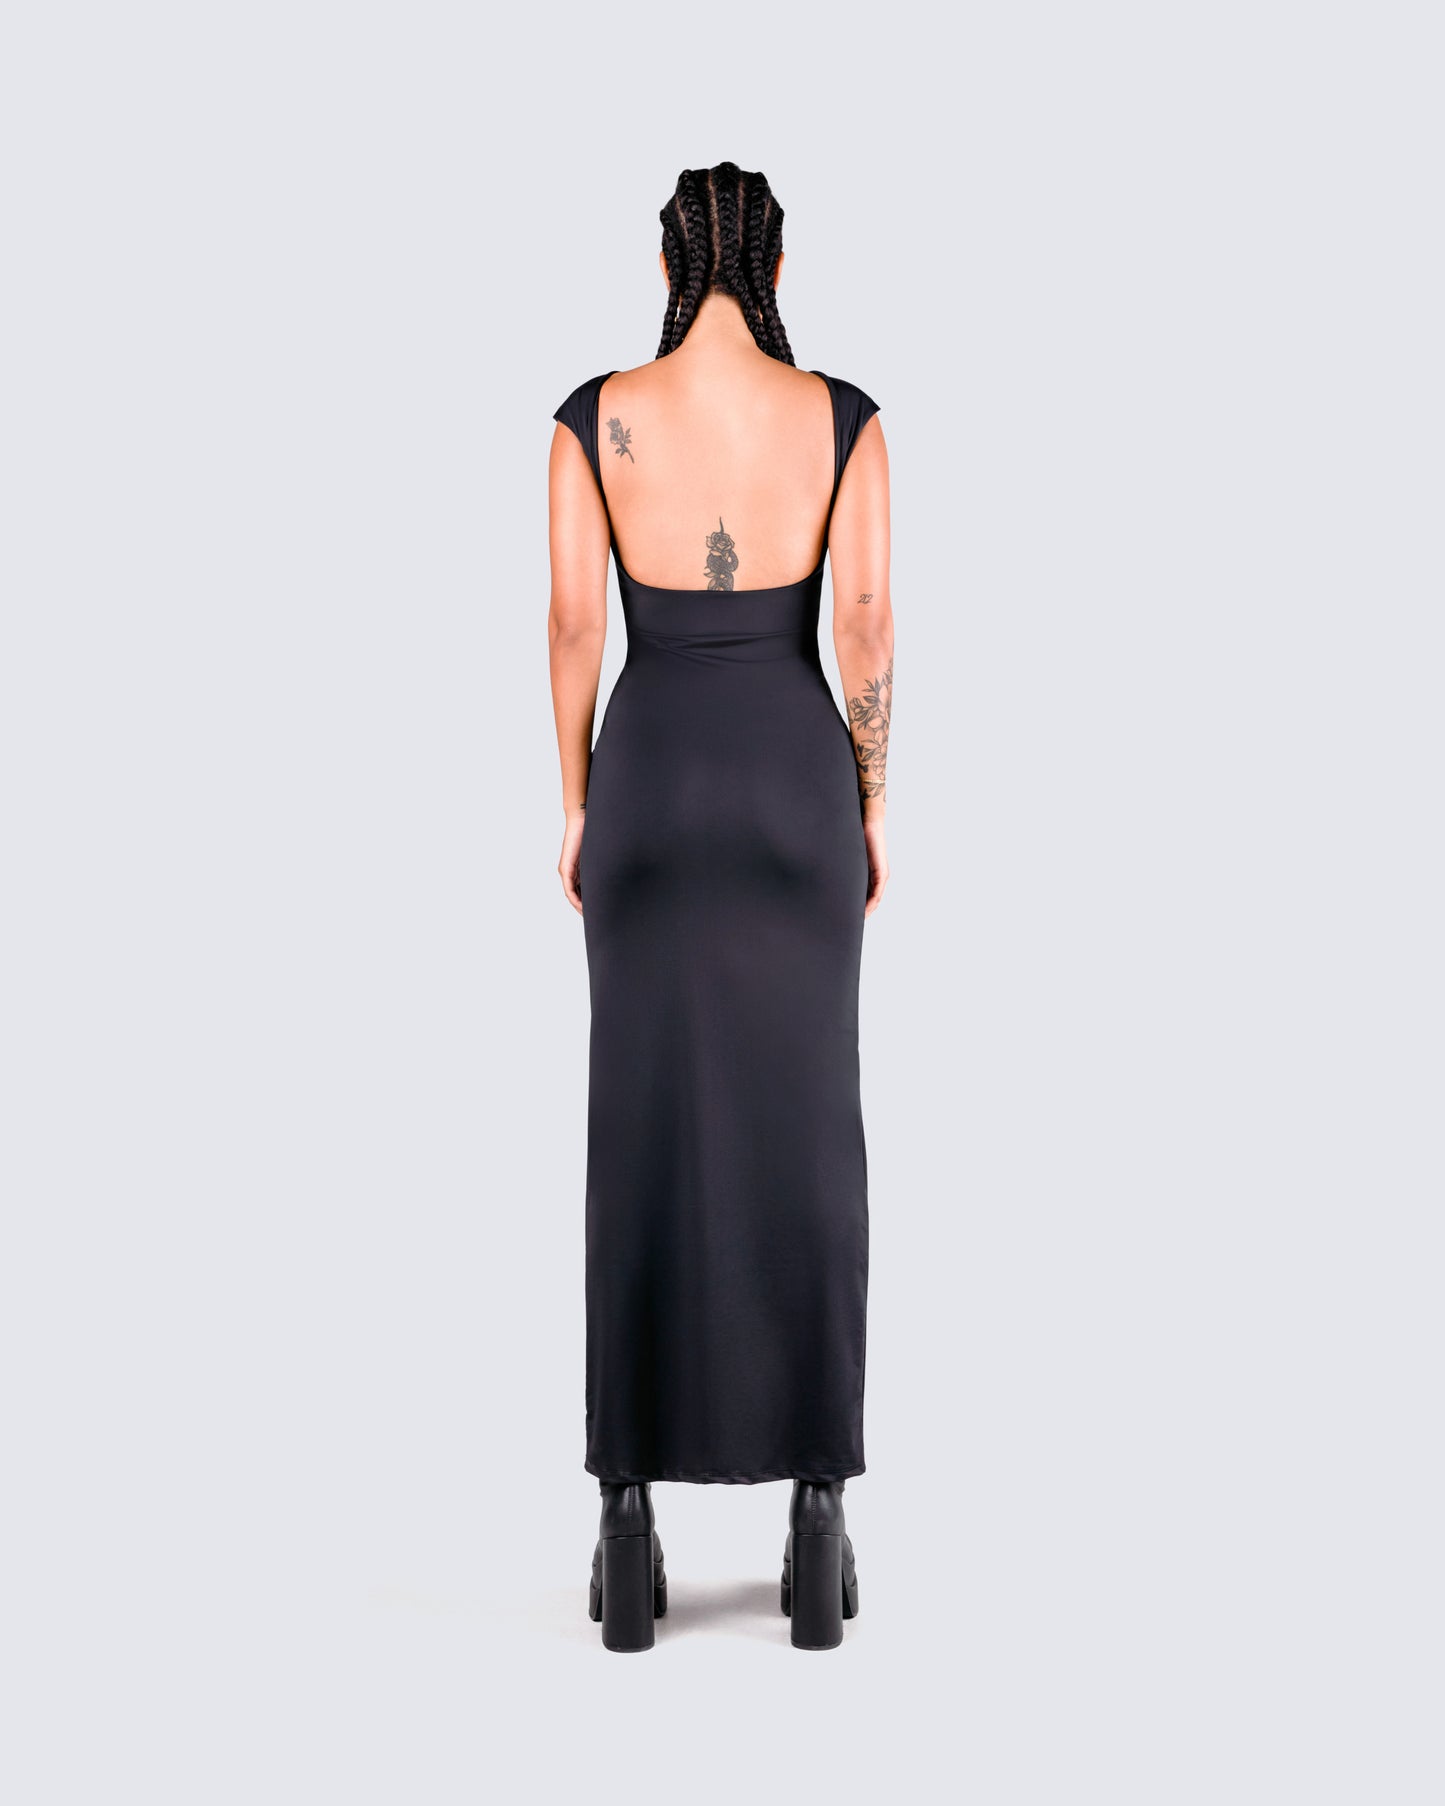 Kath Black Jersey Backless Dress